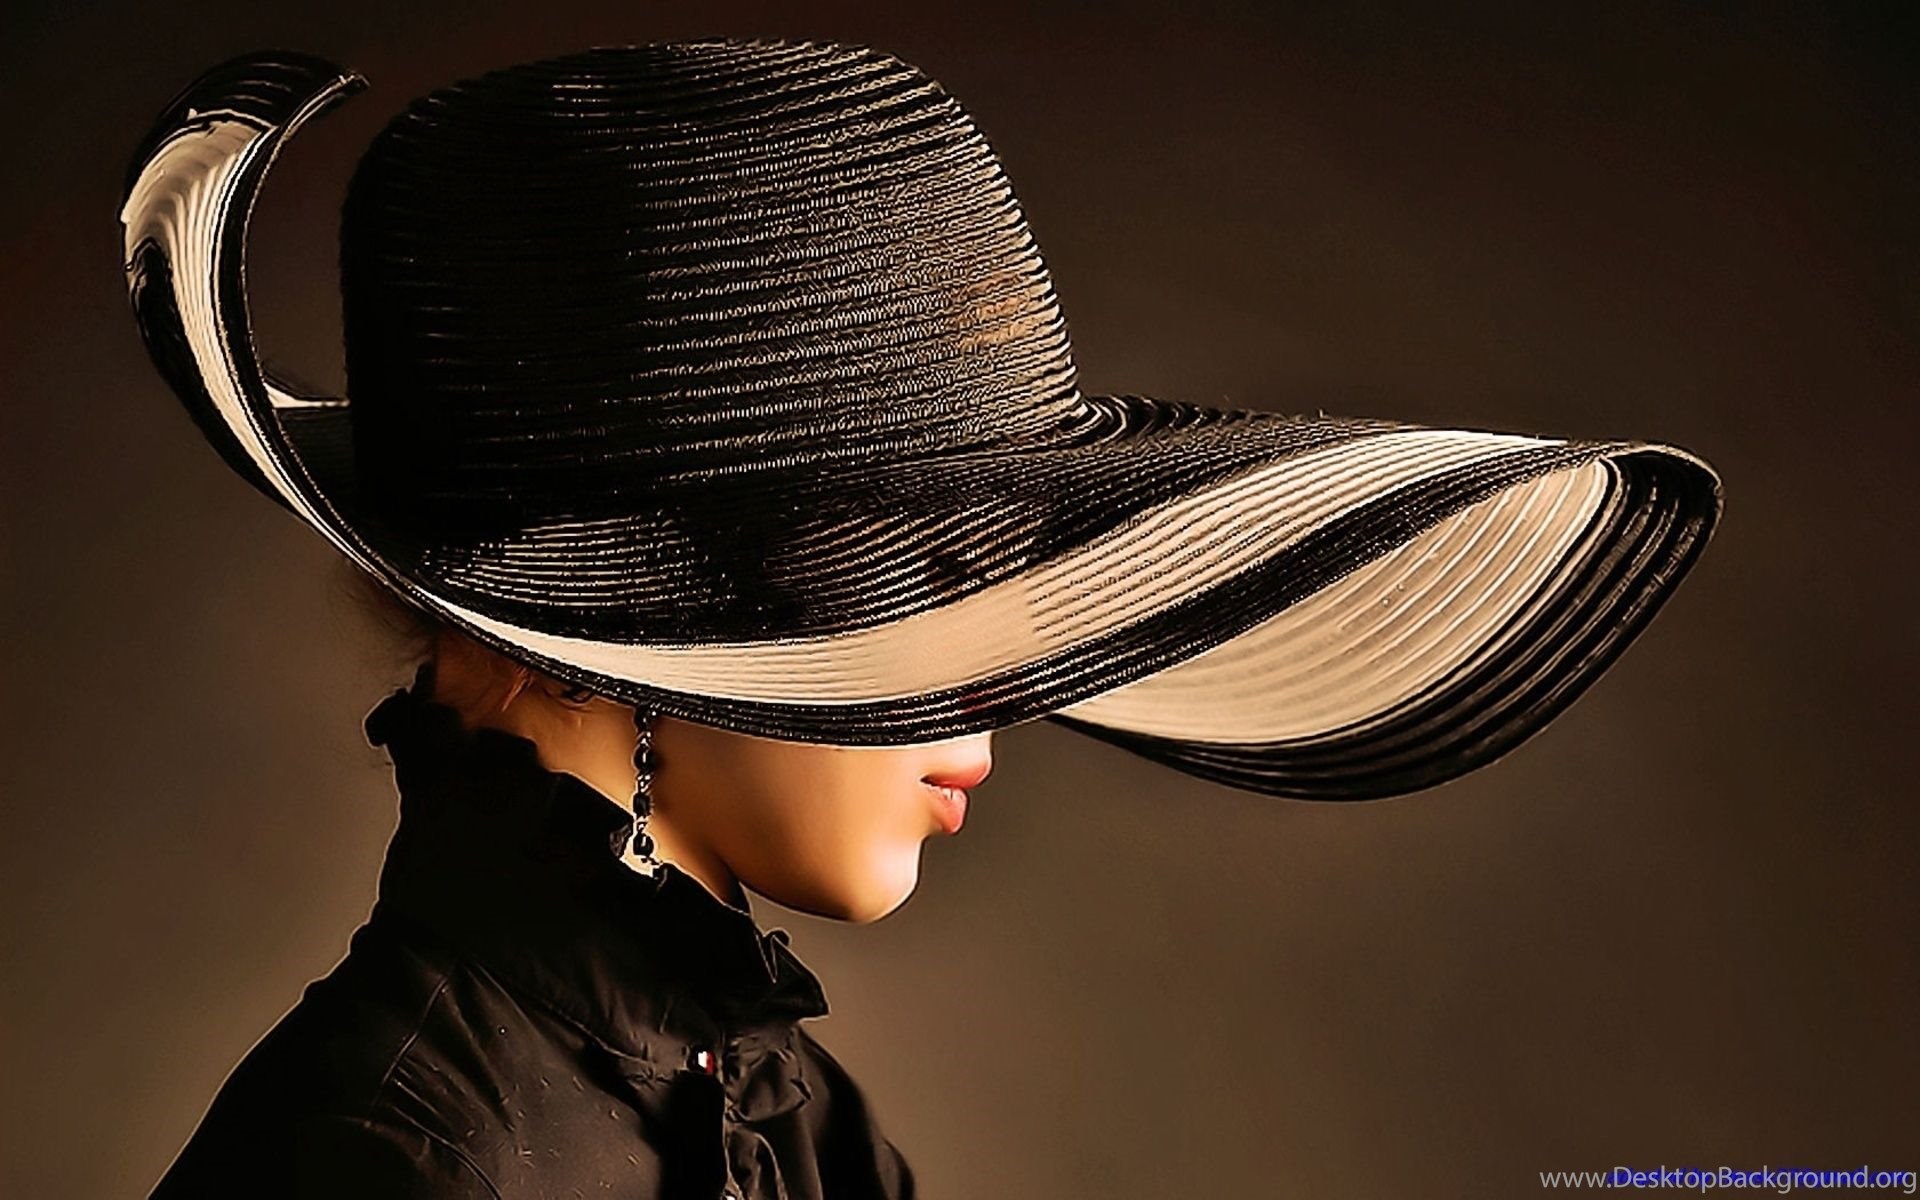 She this hat. Девушка в шляпе. Женщина в шляпке. Красивая женщина в шляпе. Дама в шляпке.